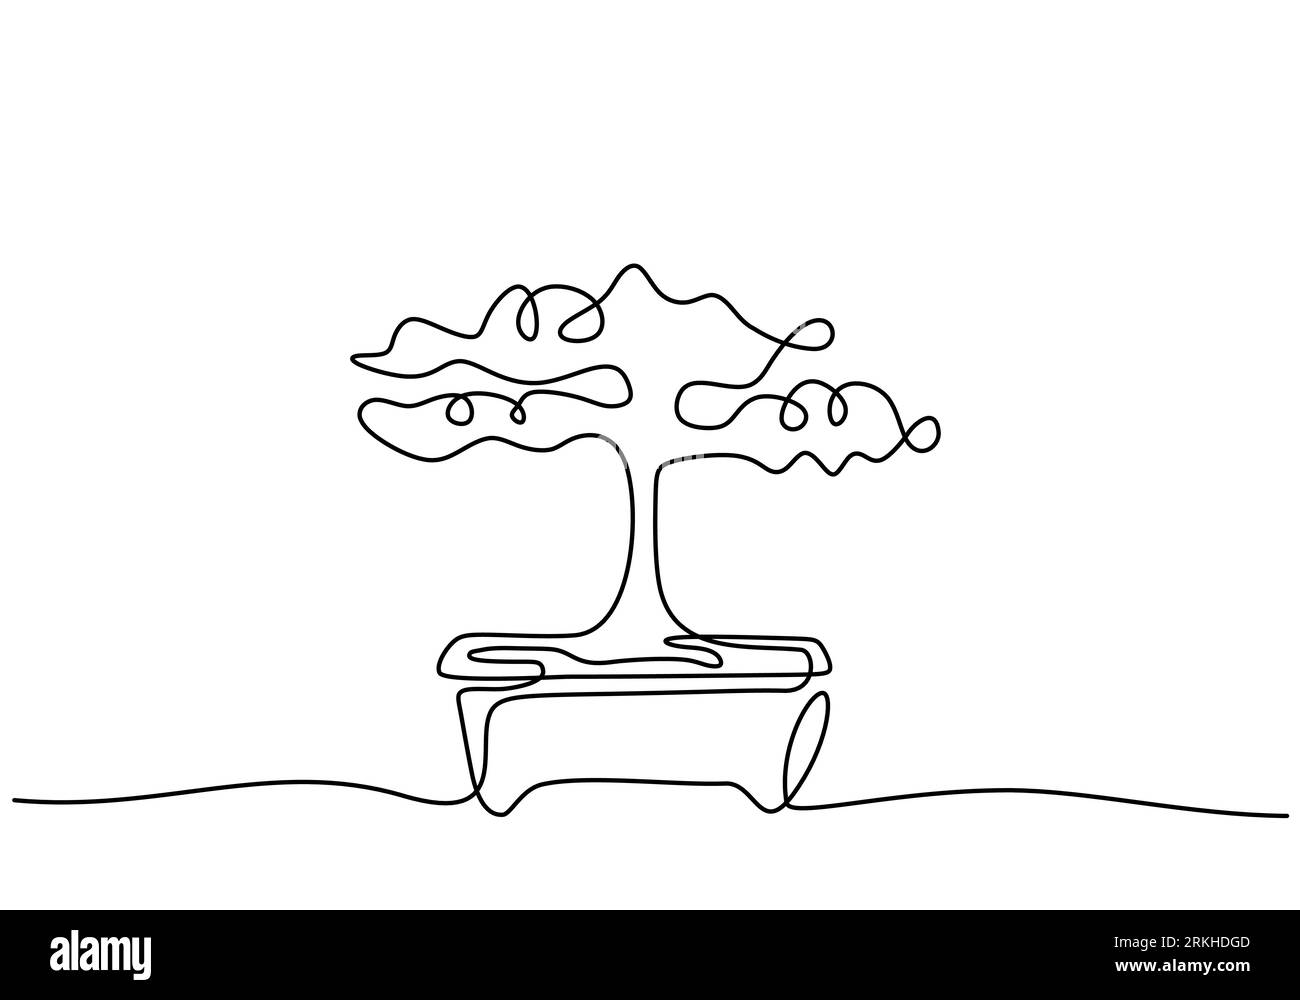 Arbre bonsaï décoratif dans des pots dessin continu d'une ligne. Vieille beauté exotique petit arbre bonsaï pour décoration murale d'art à la maison. Ancienne plante en pot minimale Illustration de Vecteur